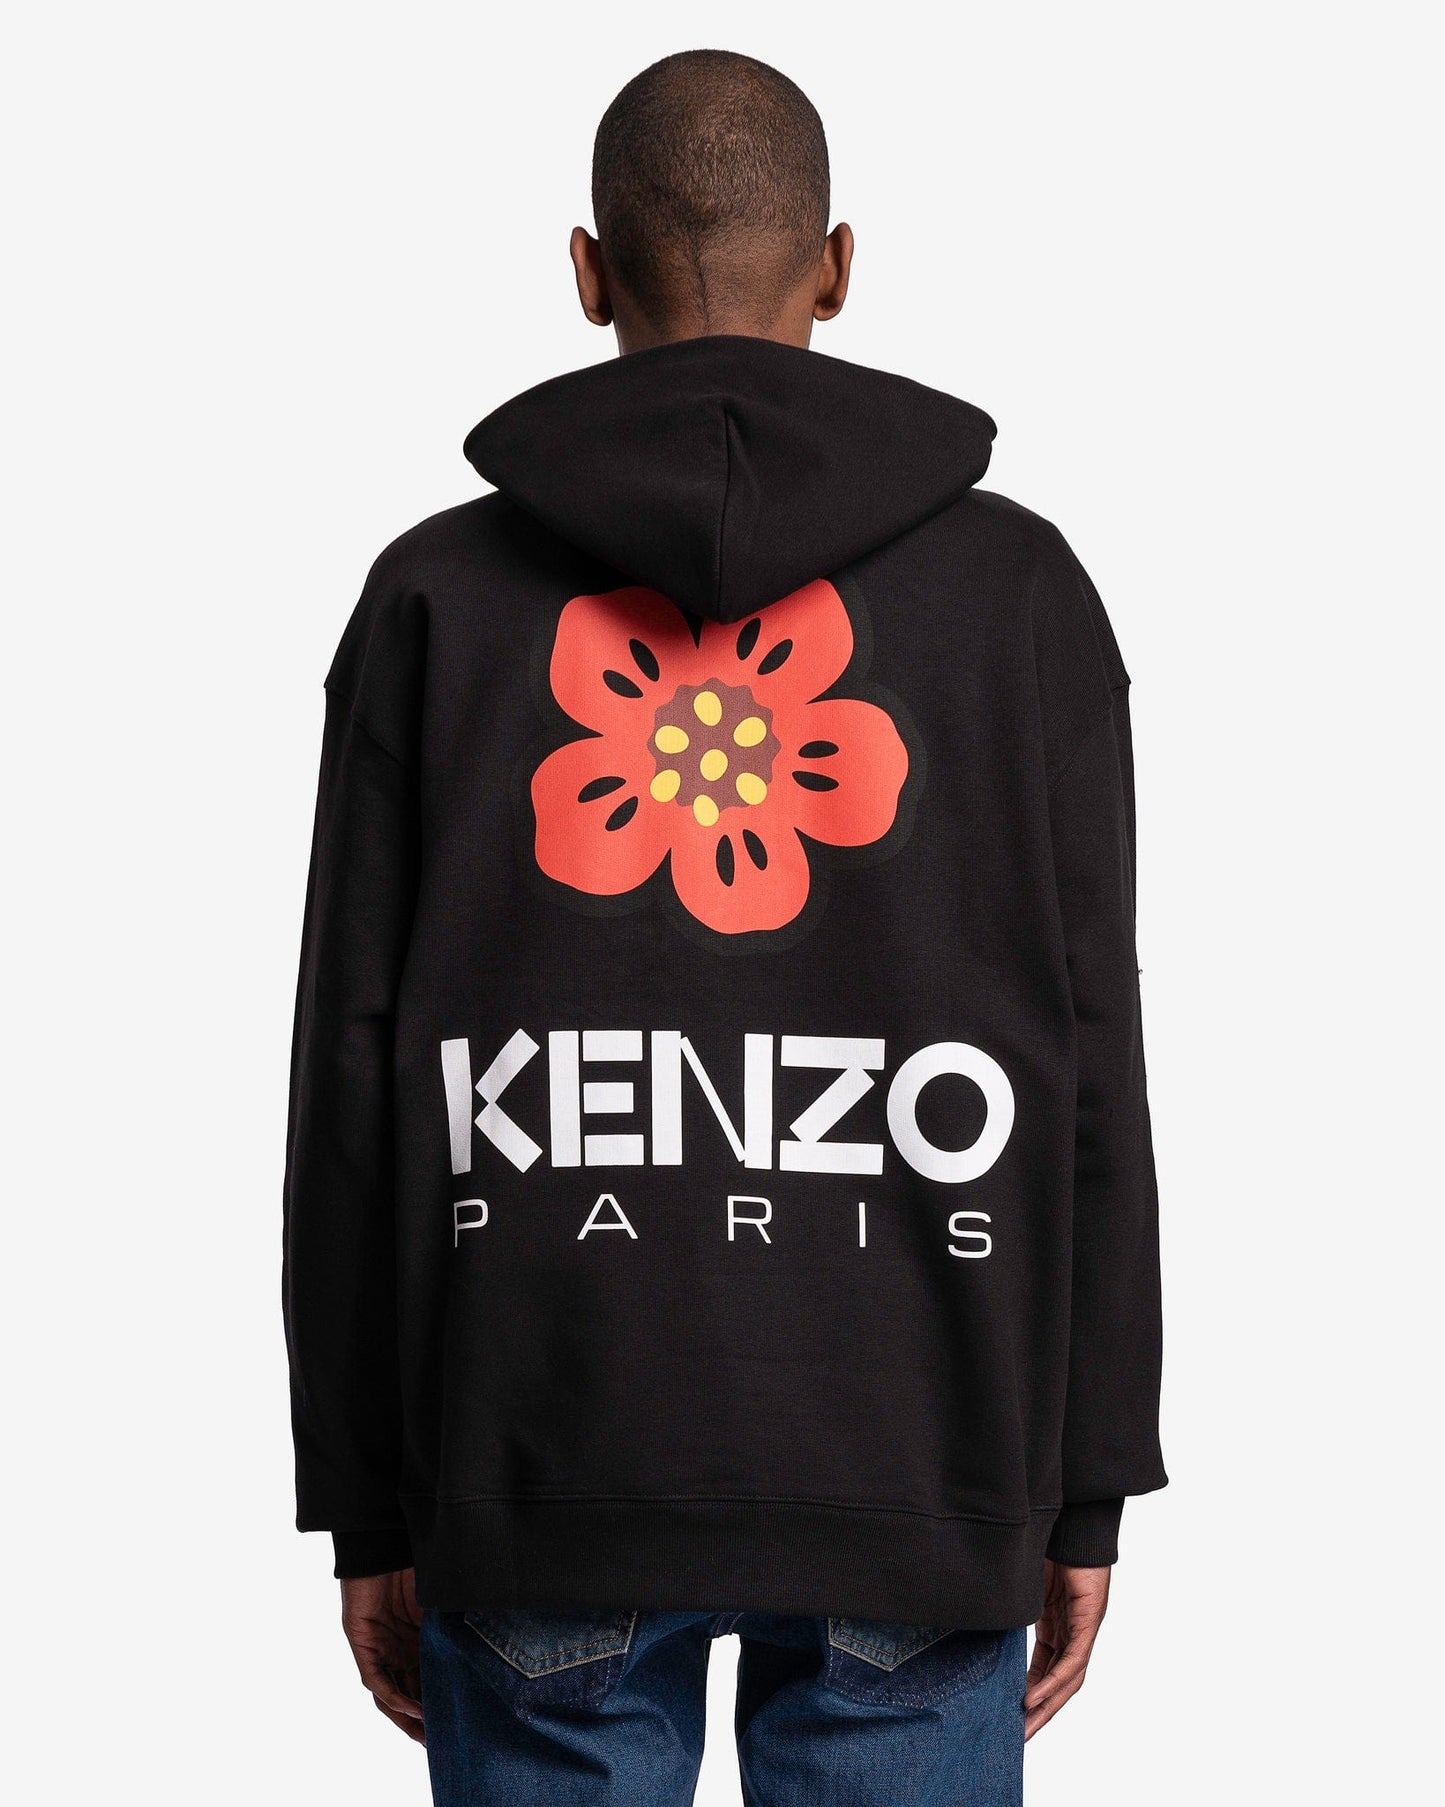 KENZO Men's Sweatshirts Boke Flower Oversized Hoodie in Black